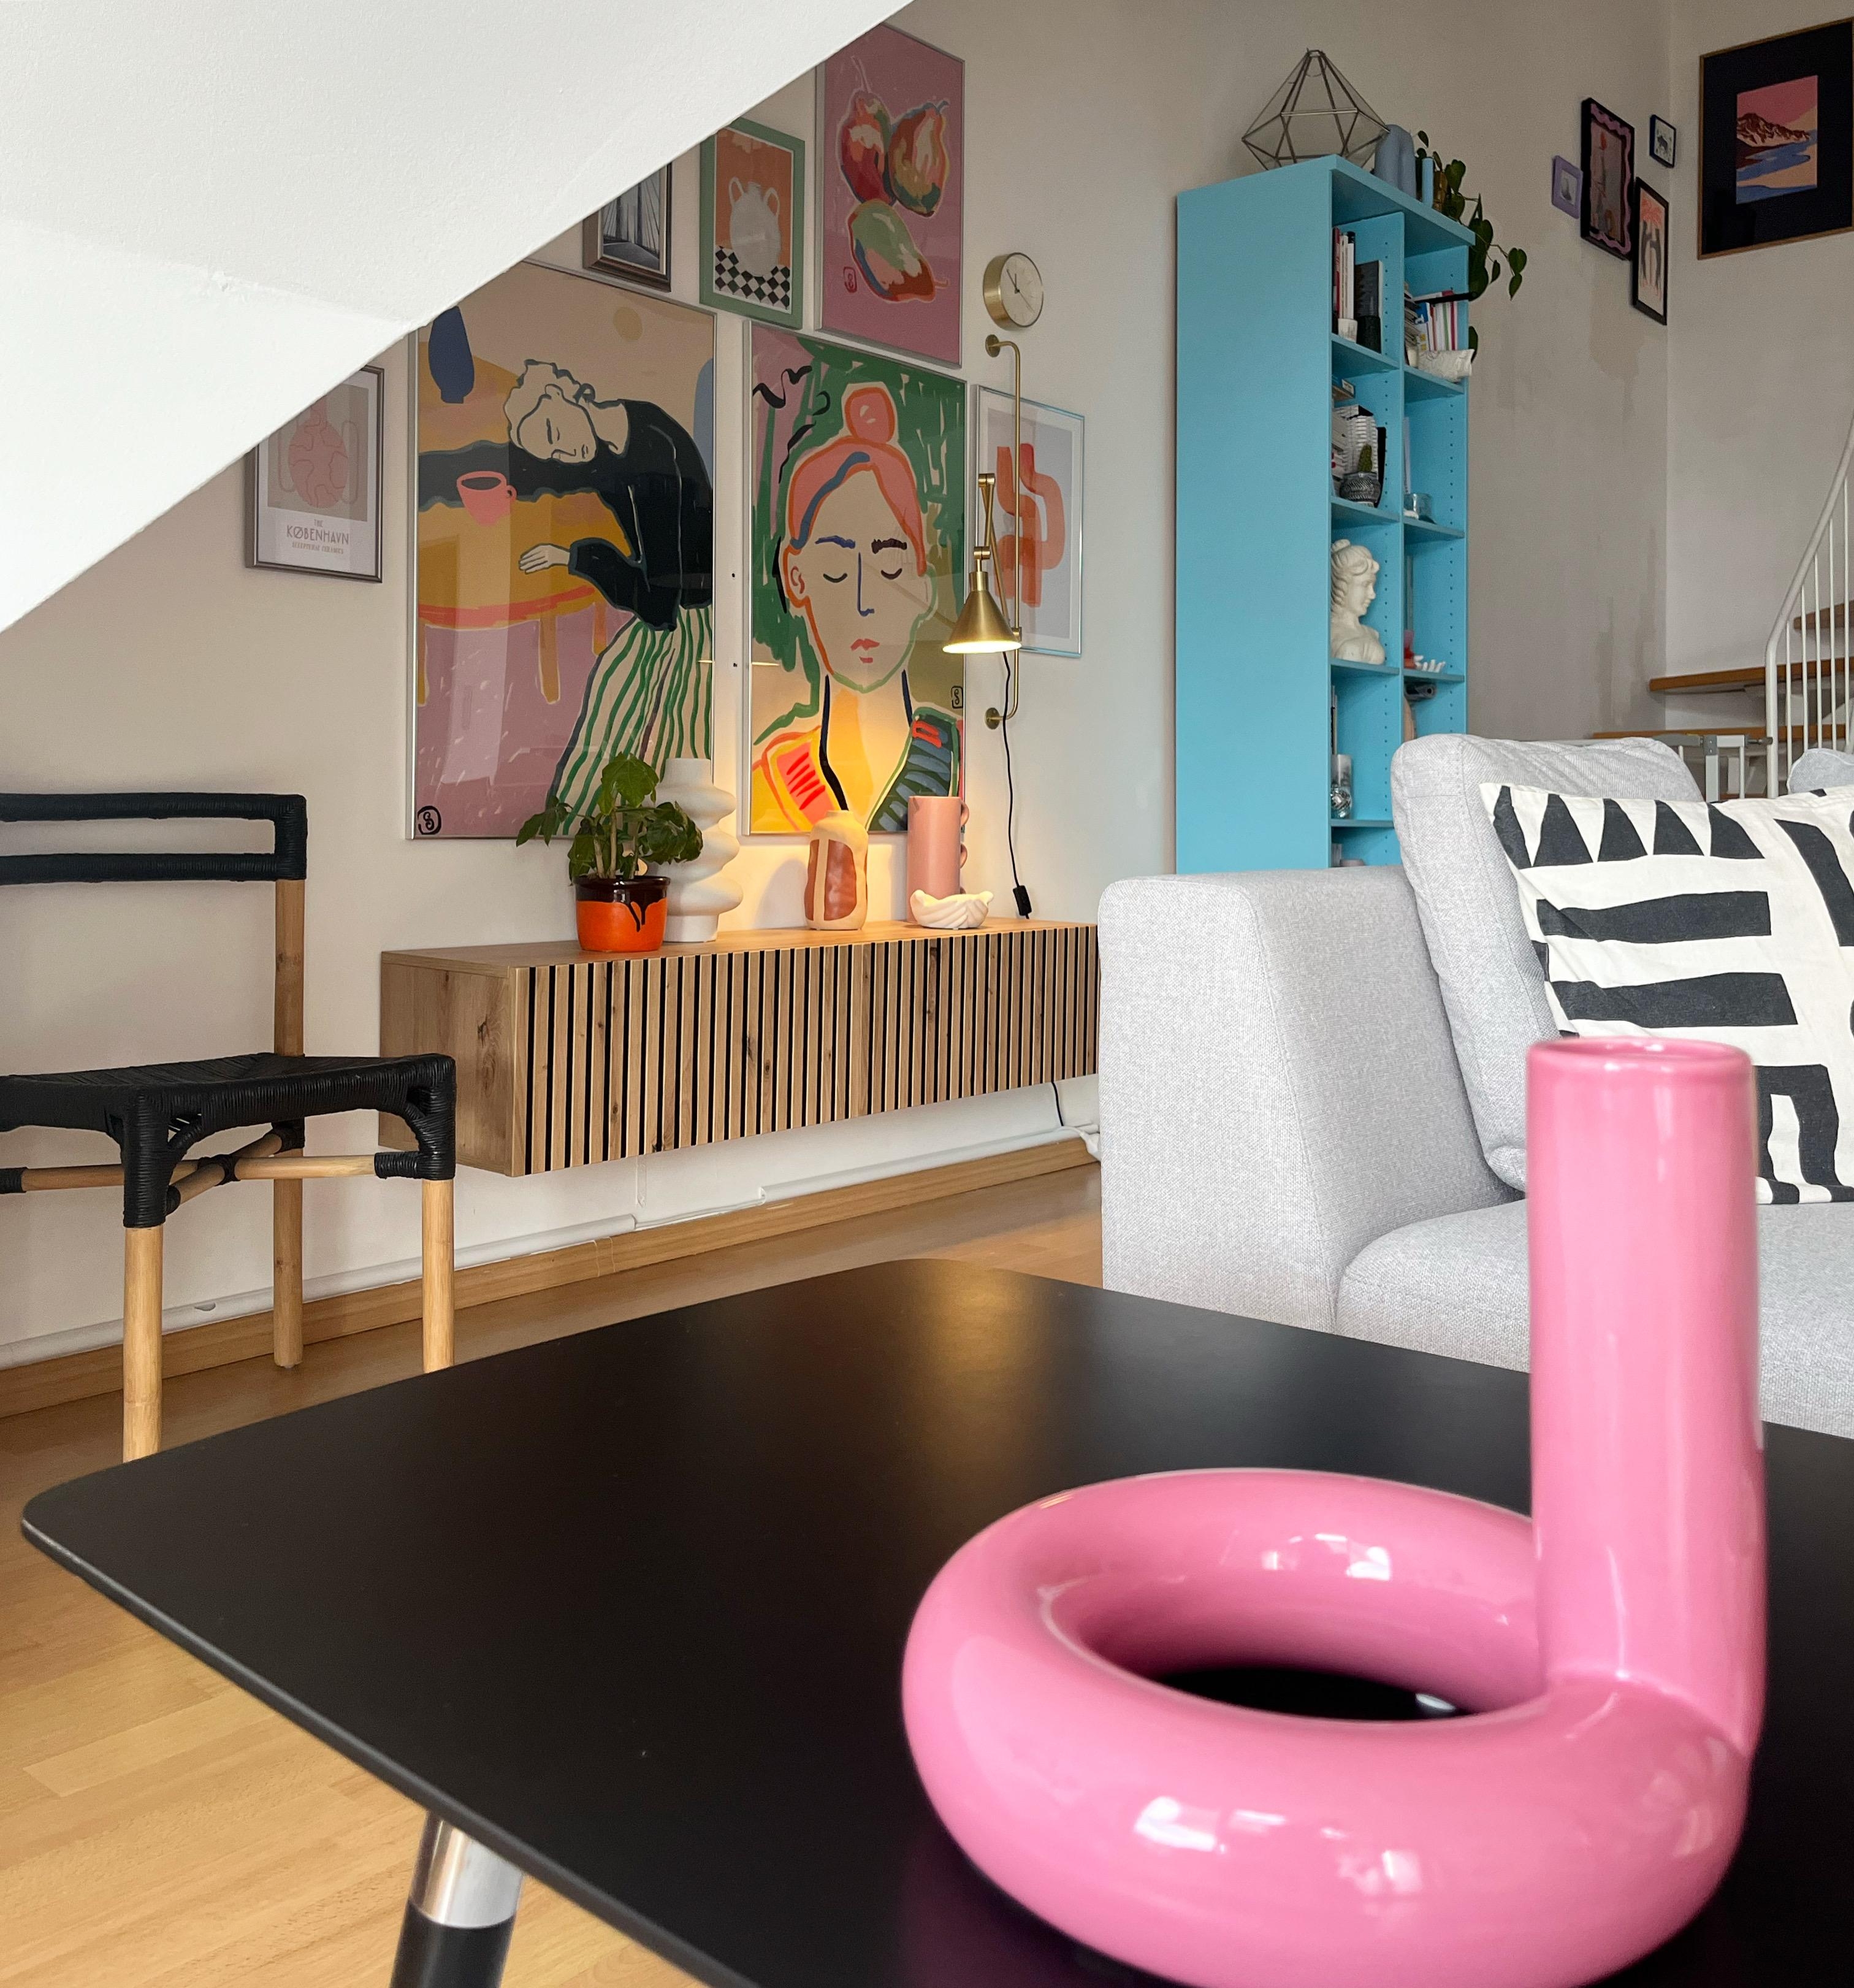 Mein geliebtes #wohnzimmer #cosyinterior #gemütlichwohnen #interiorfarben #wohnkonfetti #couchliebt #couchstyle